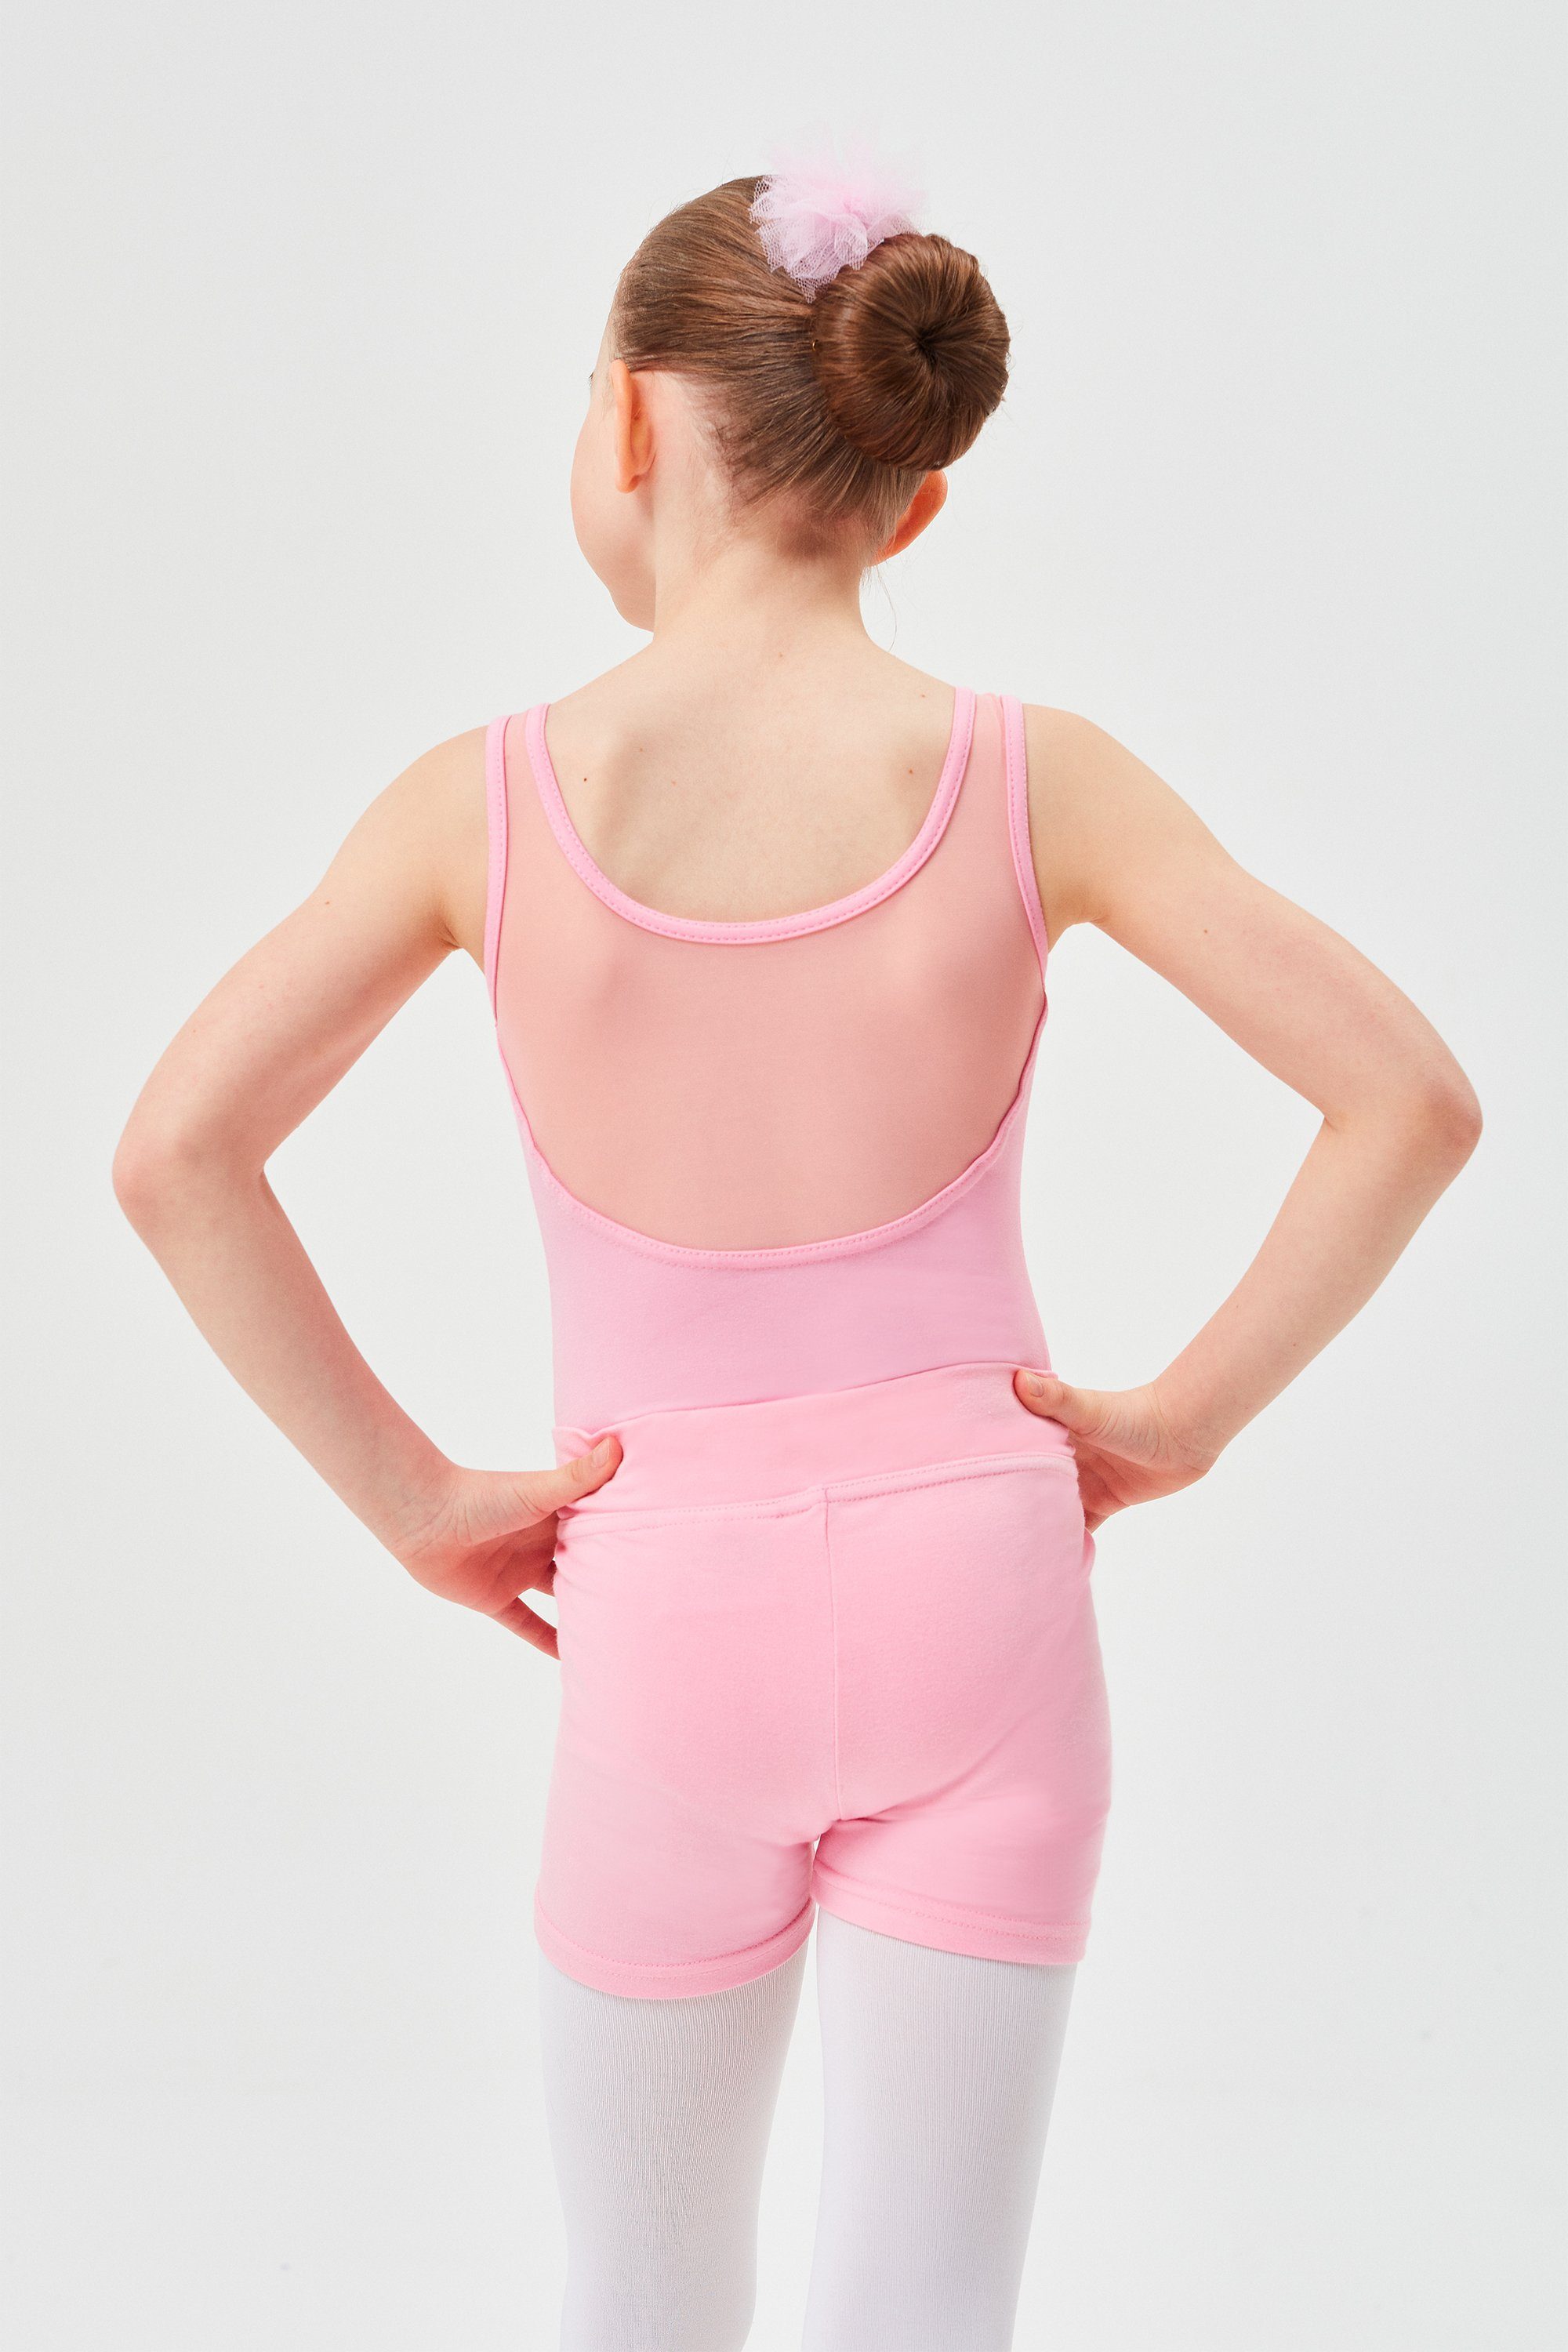 Abby tanzmuster Ballett rosa aus Mädchen weicher kurze Baumwolle Shorts für Dancehose Hose